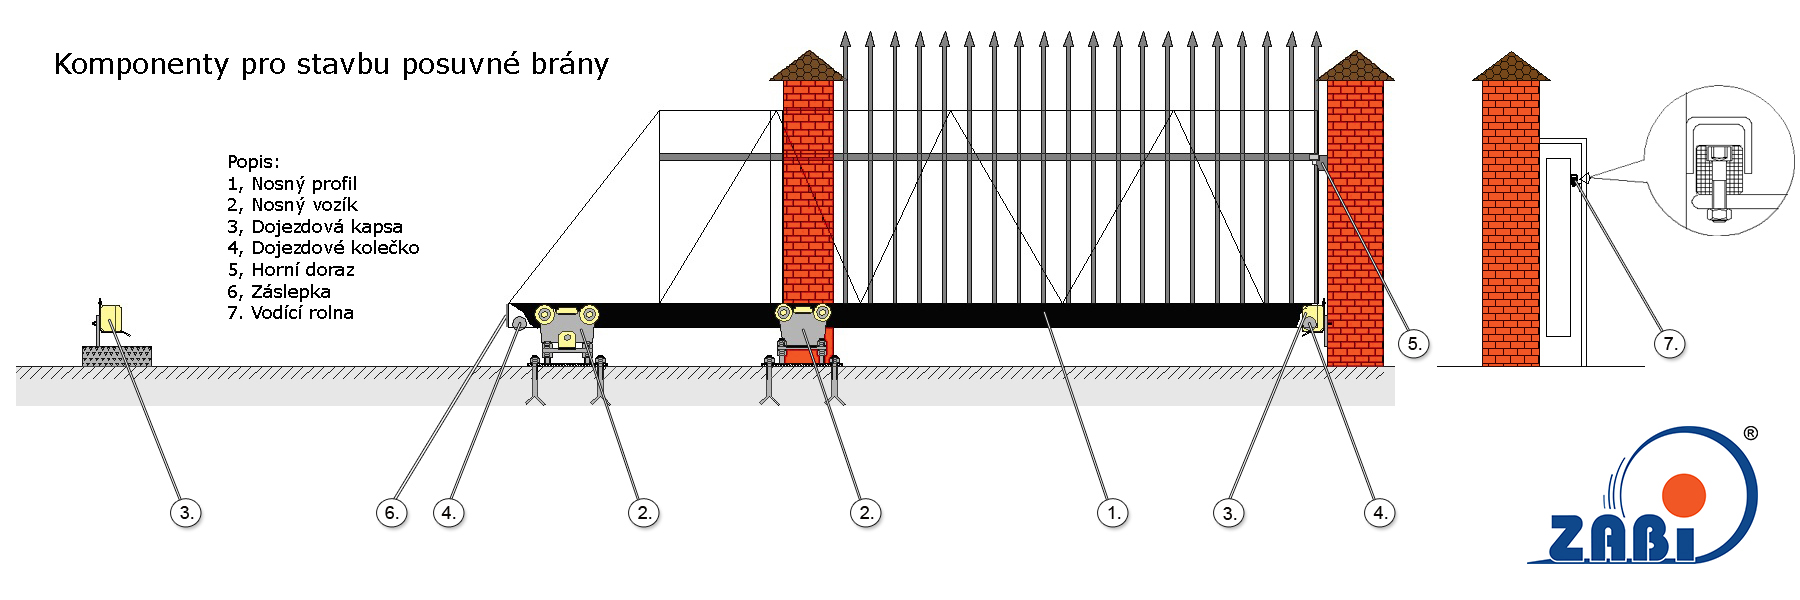 Komponenty pro stavbu posuvné brány